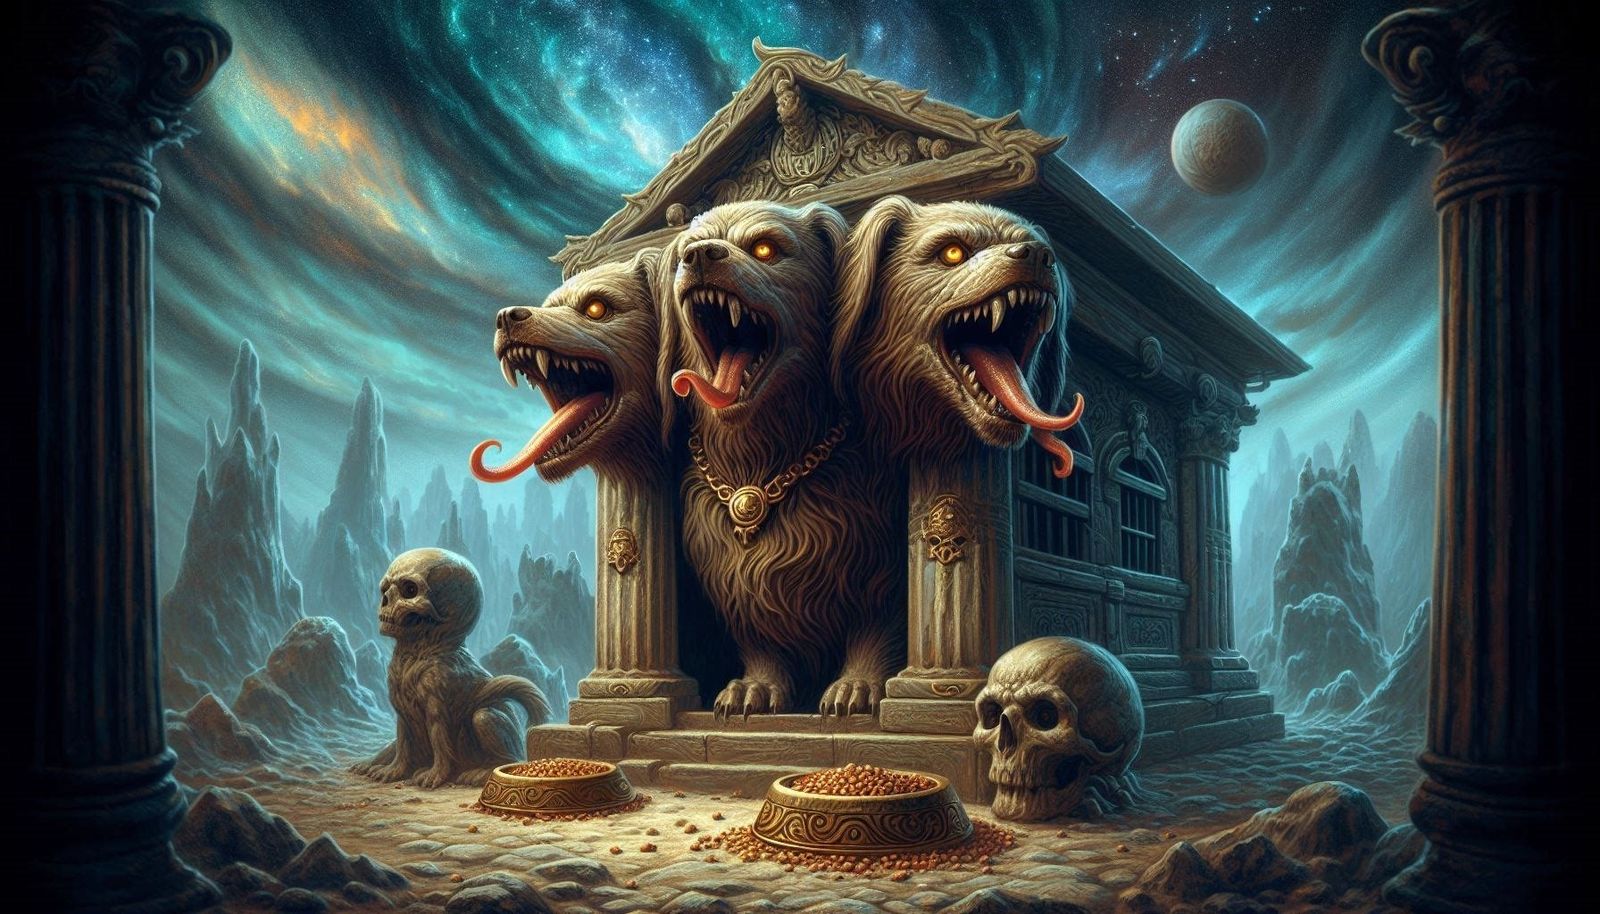 Cerberus in his doghouse in the underworld